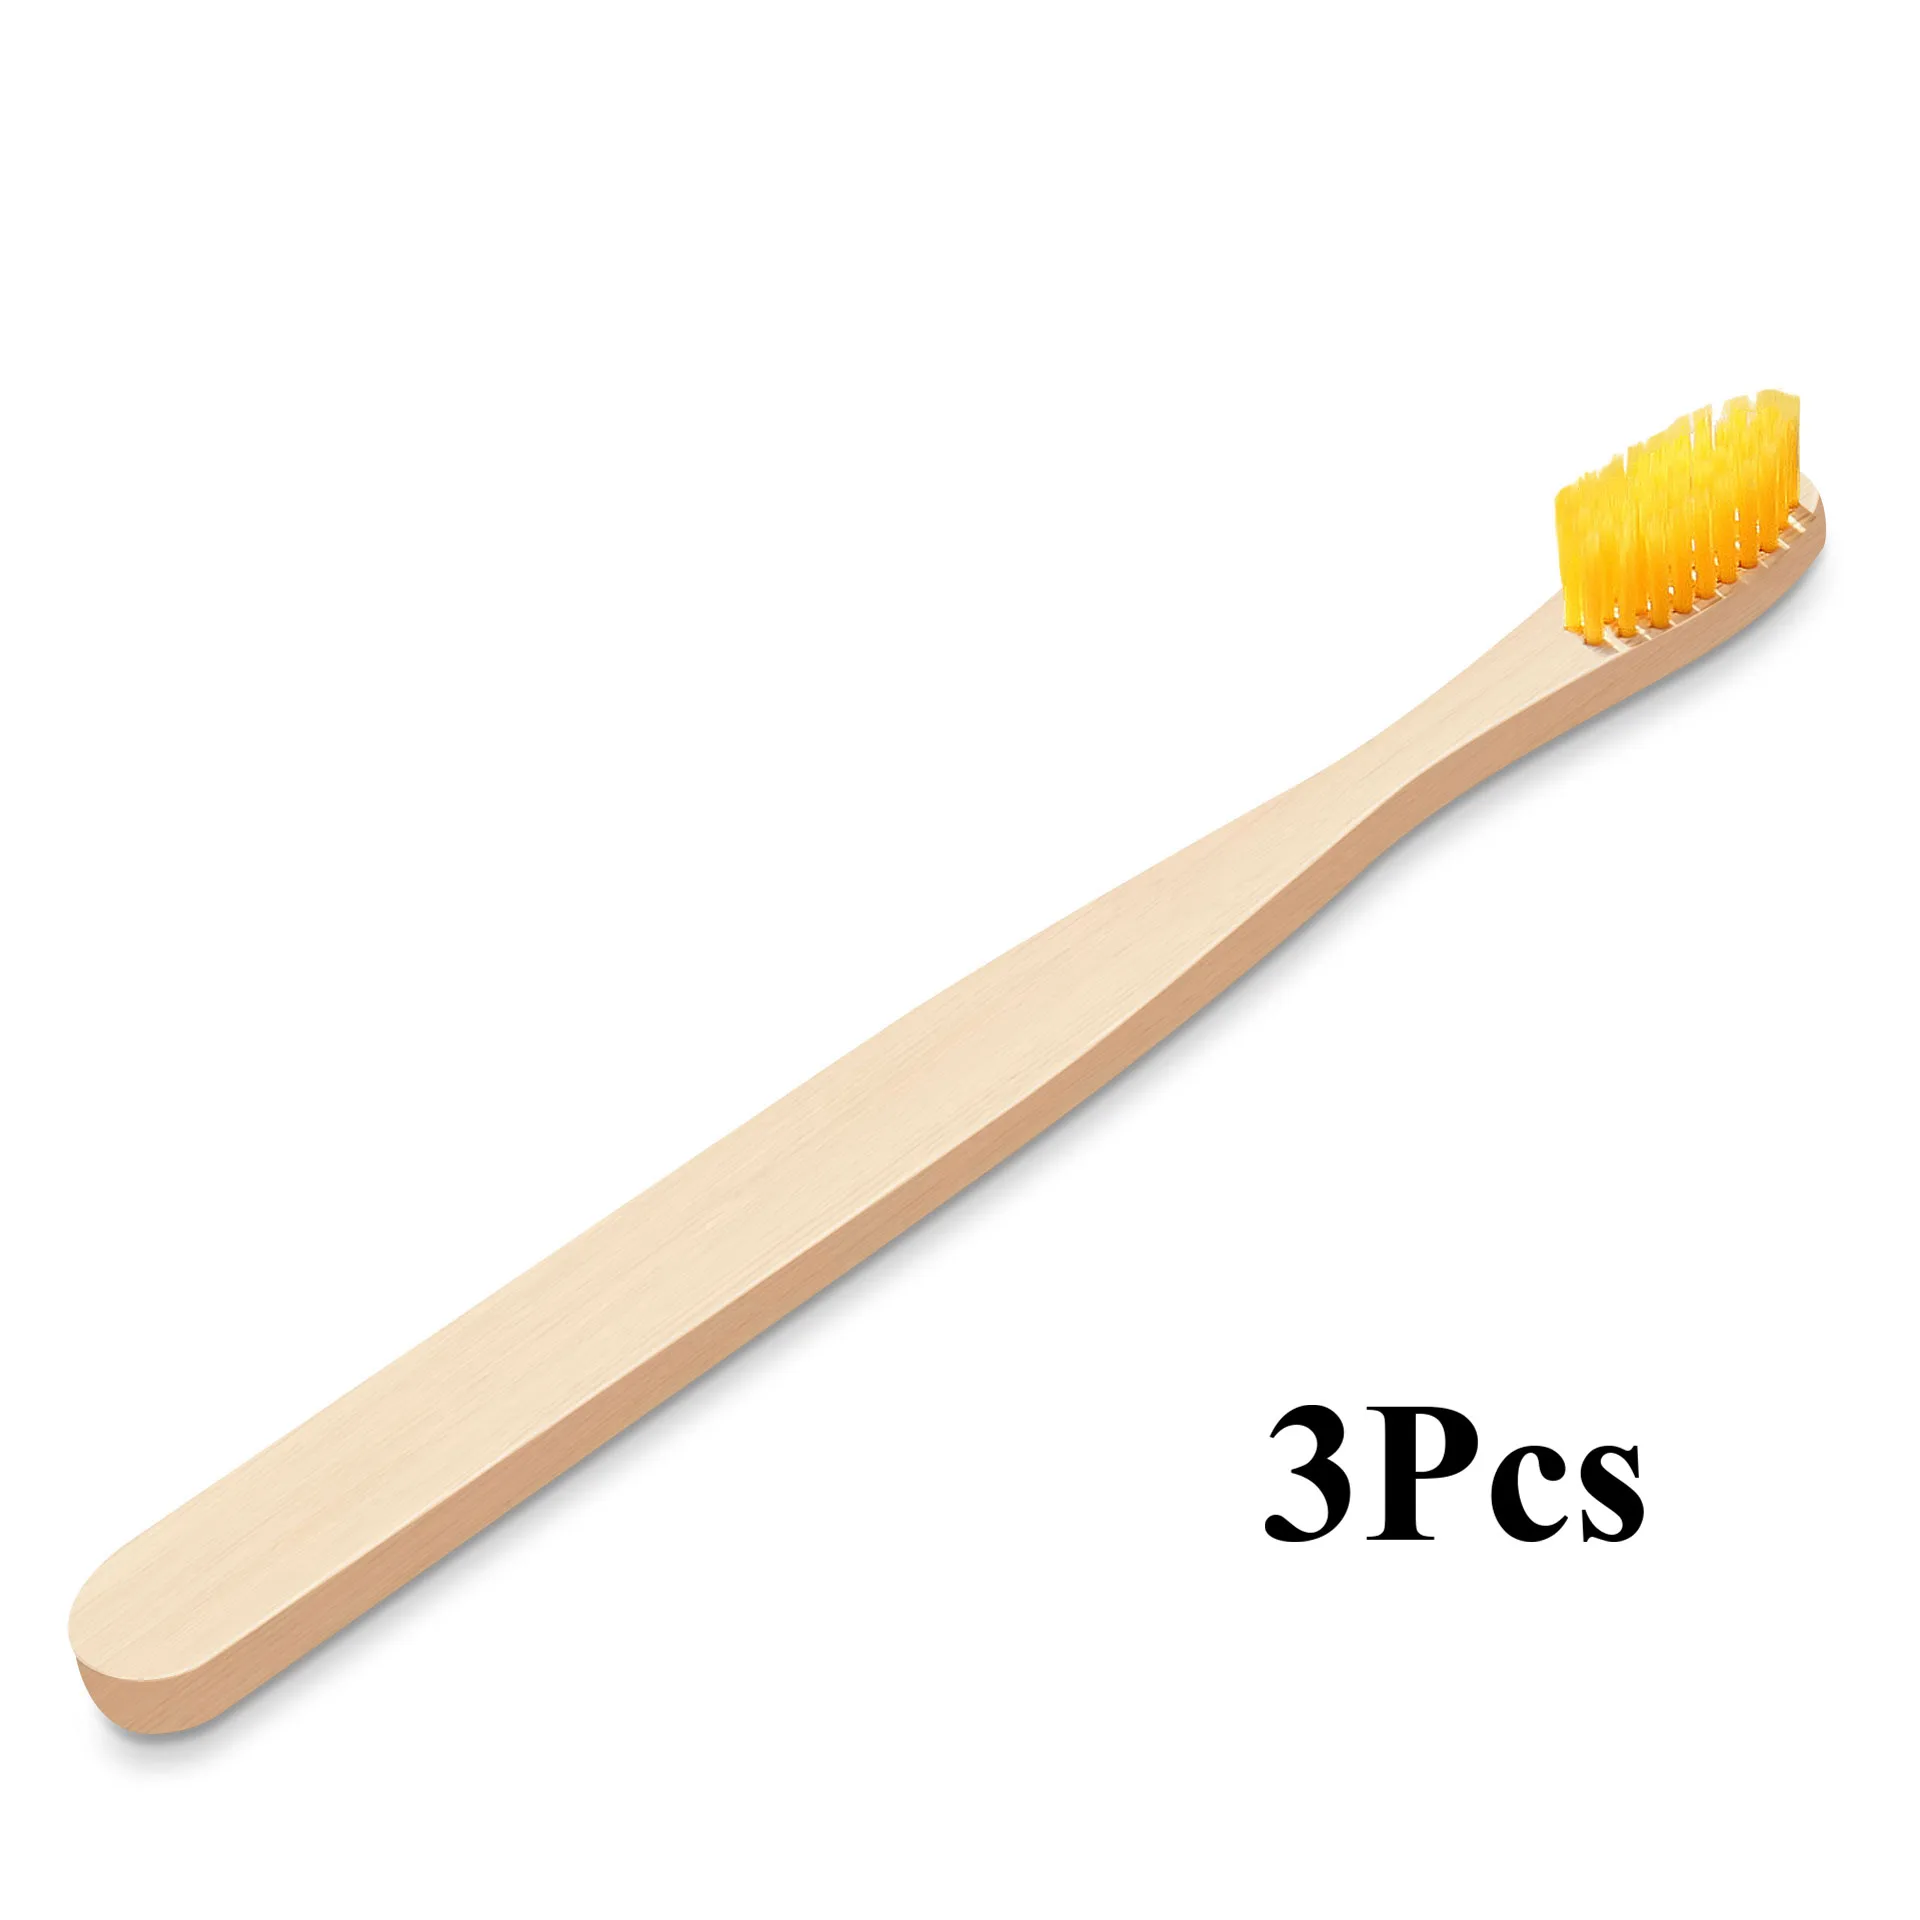 Fulljion бамбуковая зубная щетка, натуральная Экологичная зубная щетка, отбеливание зубов, портативная Мягкая зубная щетка для личного здоровья - Цвет: 3Pcs Yellow